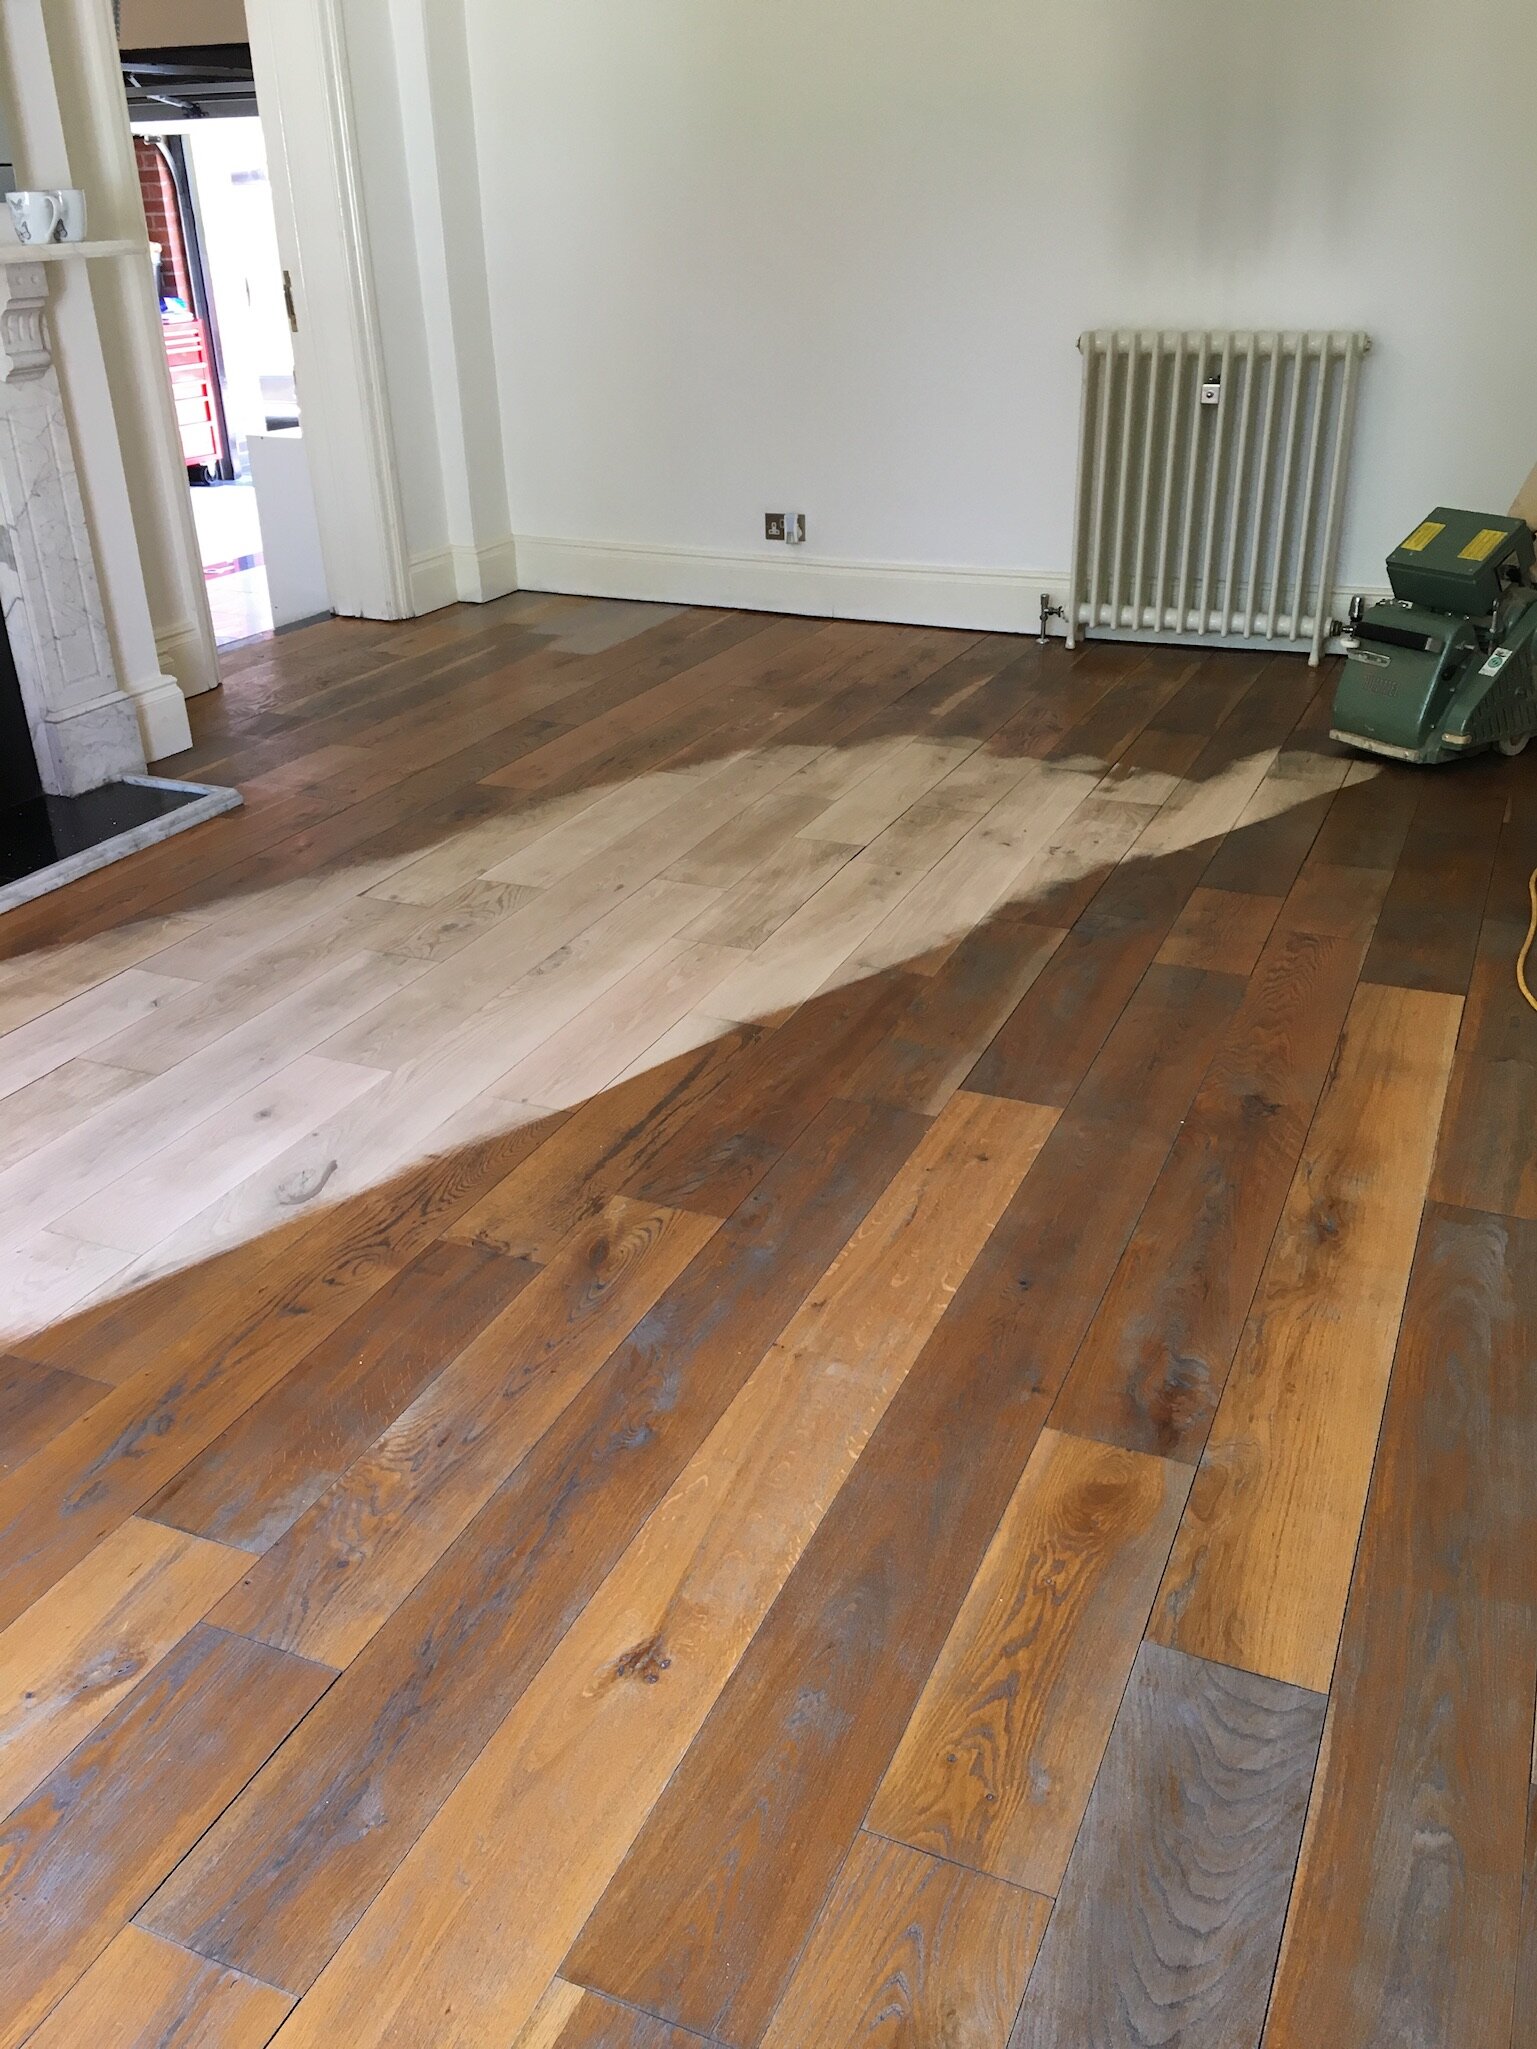 Refinishing Hardwood Flooring, Do You Have To Sand New Hardwood Floors